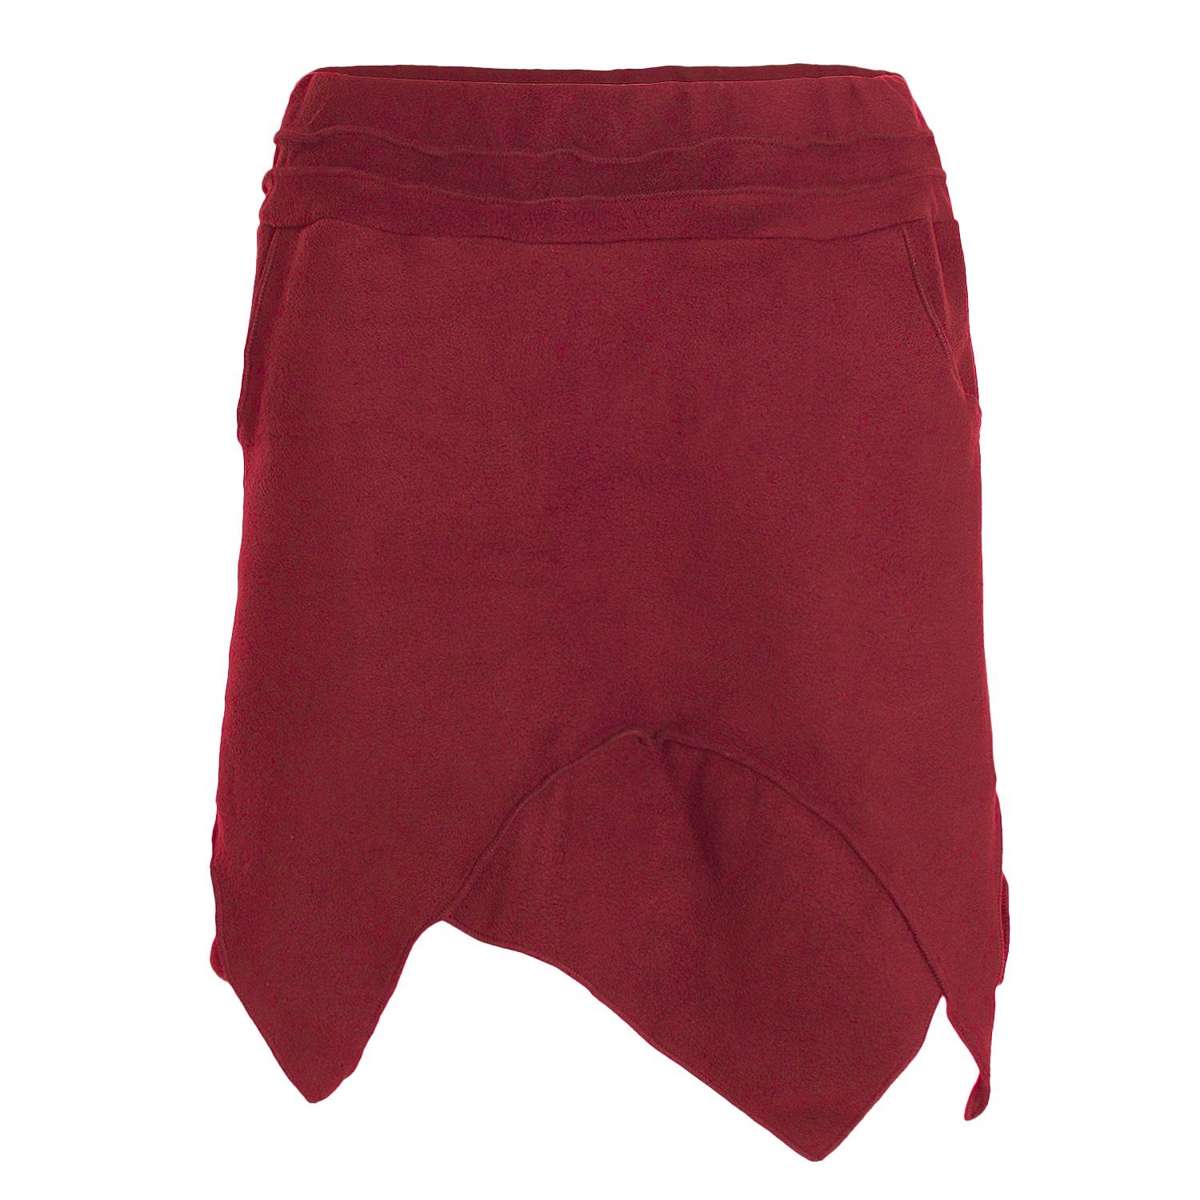 Остроконечная юбка термоюбка теплая женская зимняя юбка короткая заостренная юбка из ЭКО флиса хиппи